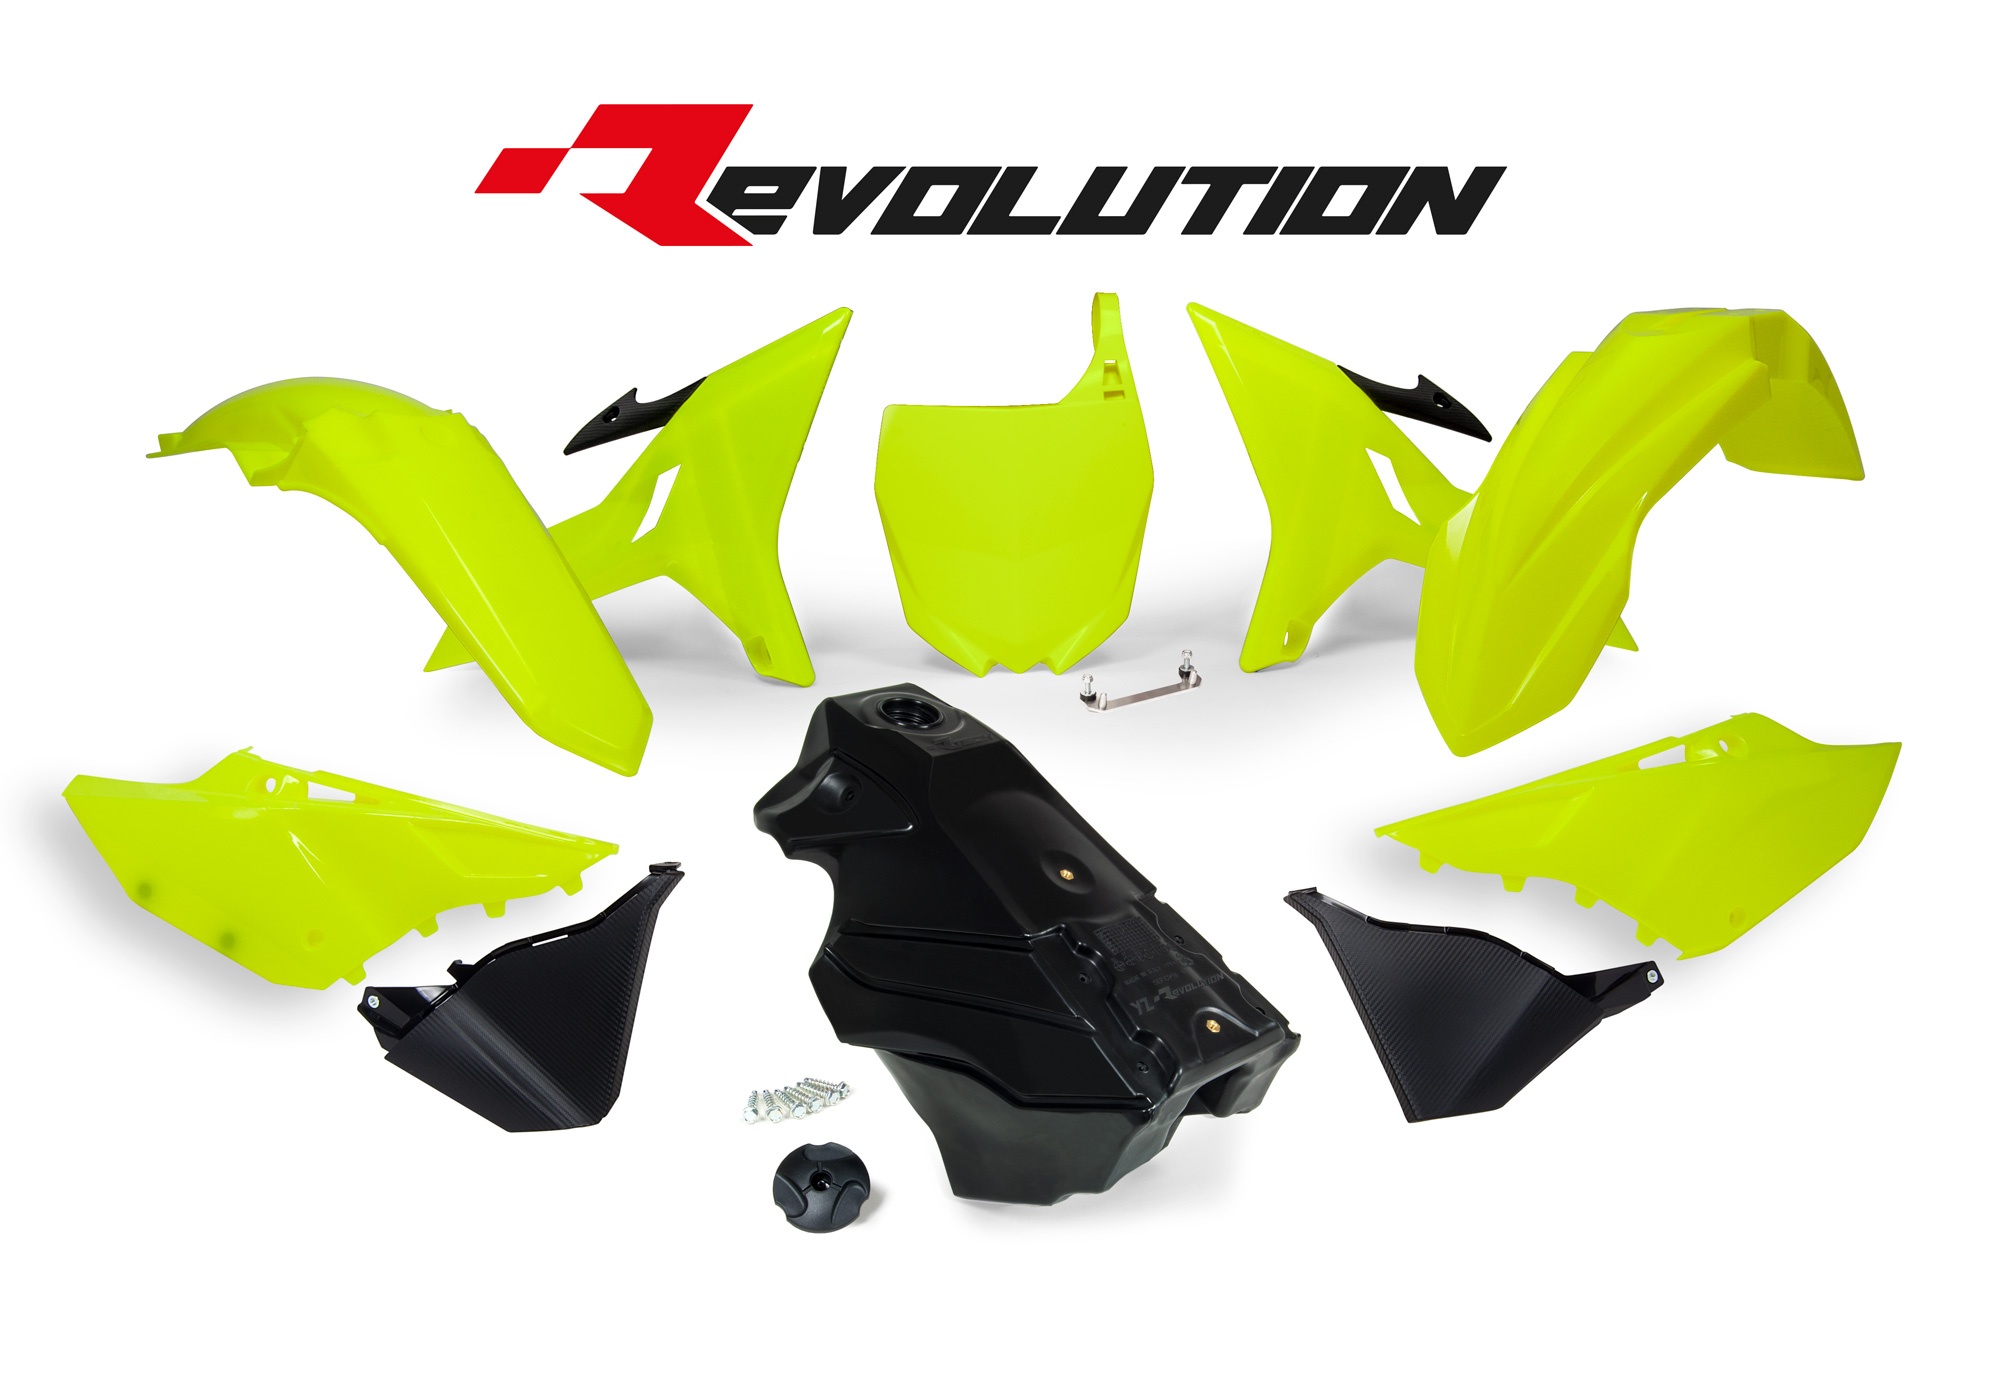 Obrázek produktu sada plastů Yamaha - REVOLUTION KIT pro YZ 125/250 02-21, RTECH (neon žlutá-černá, 7 dílů)